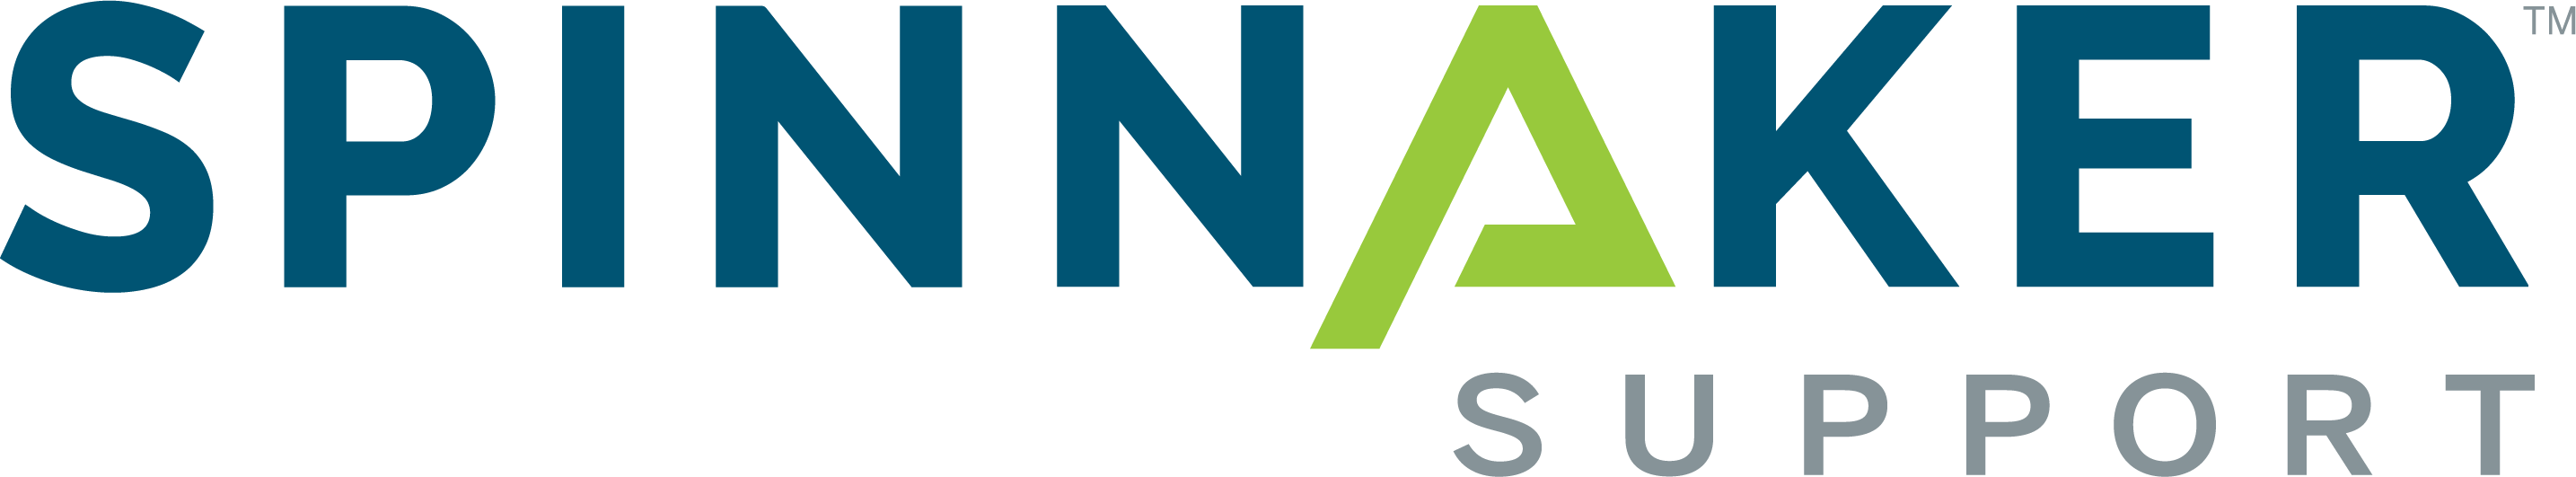 Spinnaker Support logo